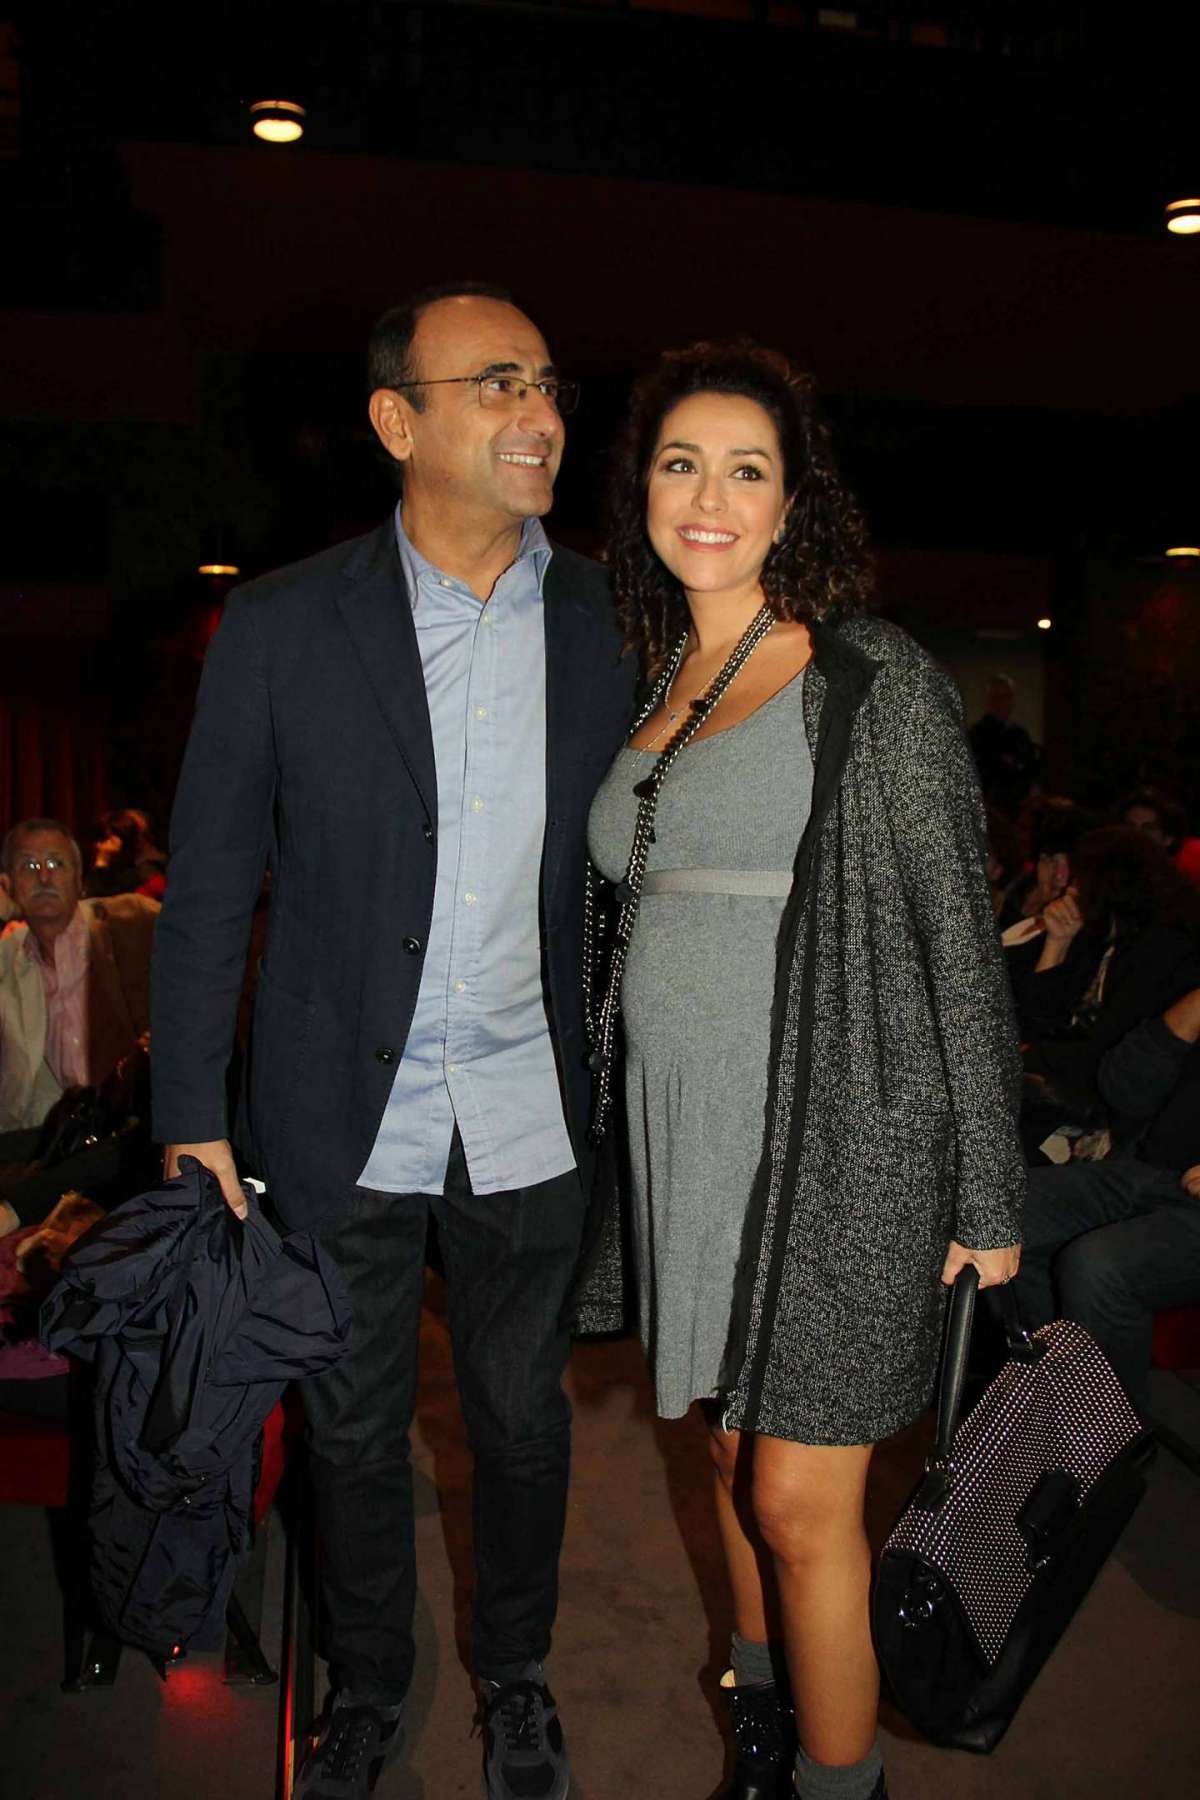 Il presentatore tv a teatro con la moglie Francesca Vaccaro in dolce attesa